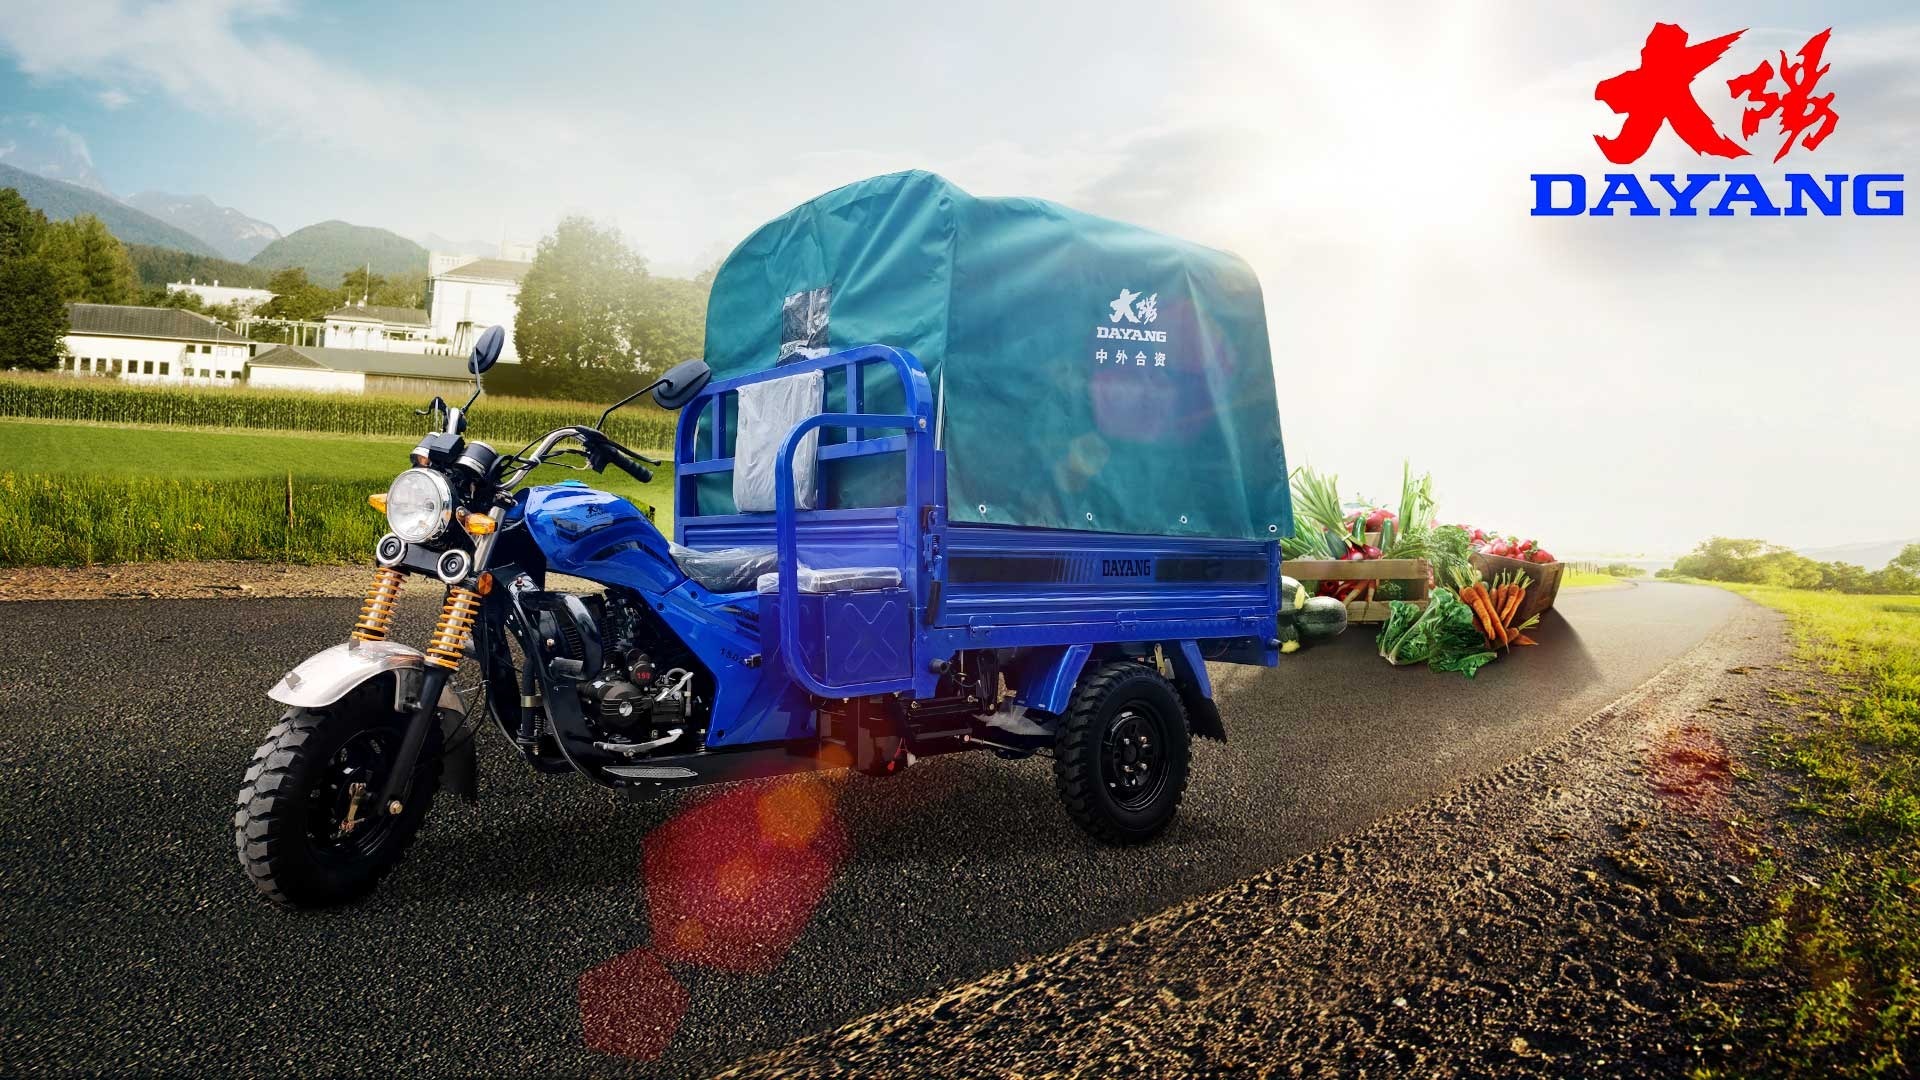 Tricycle as“Caravan”